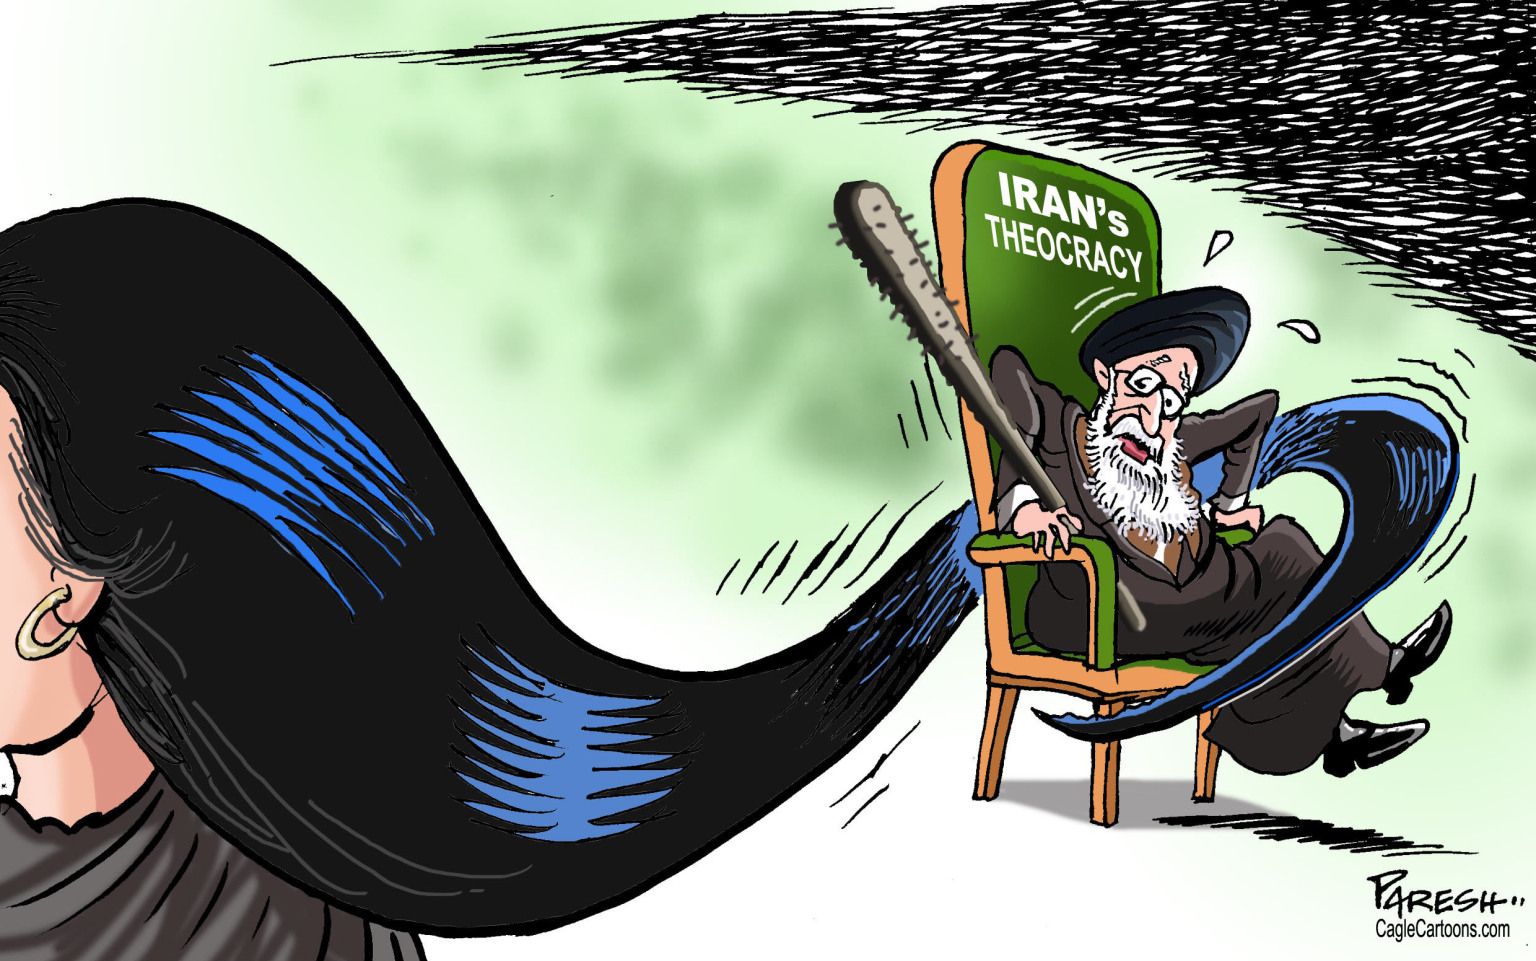 Iranian women protest - newsjustin.press - editorial cartoon